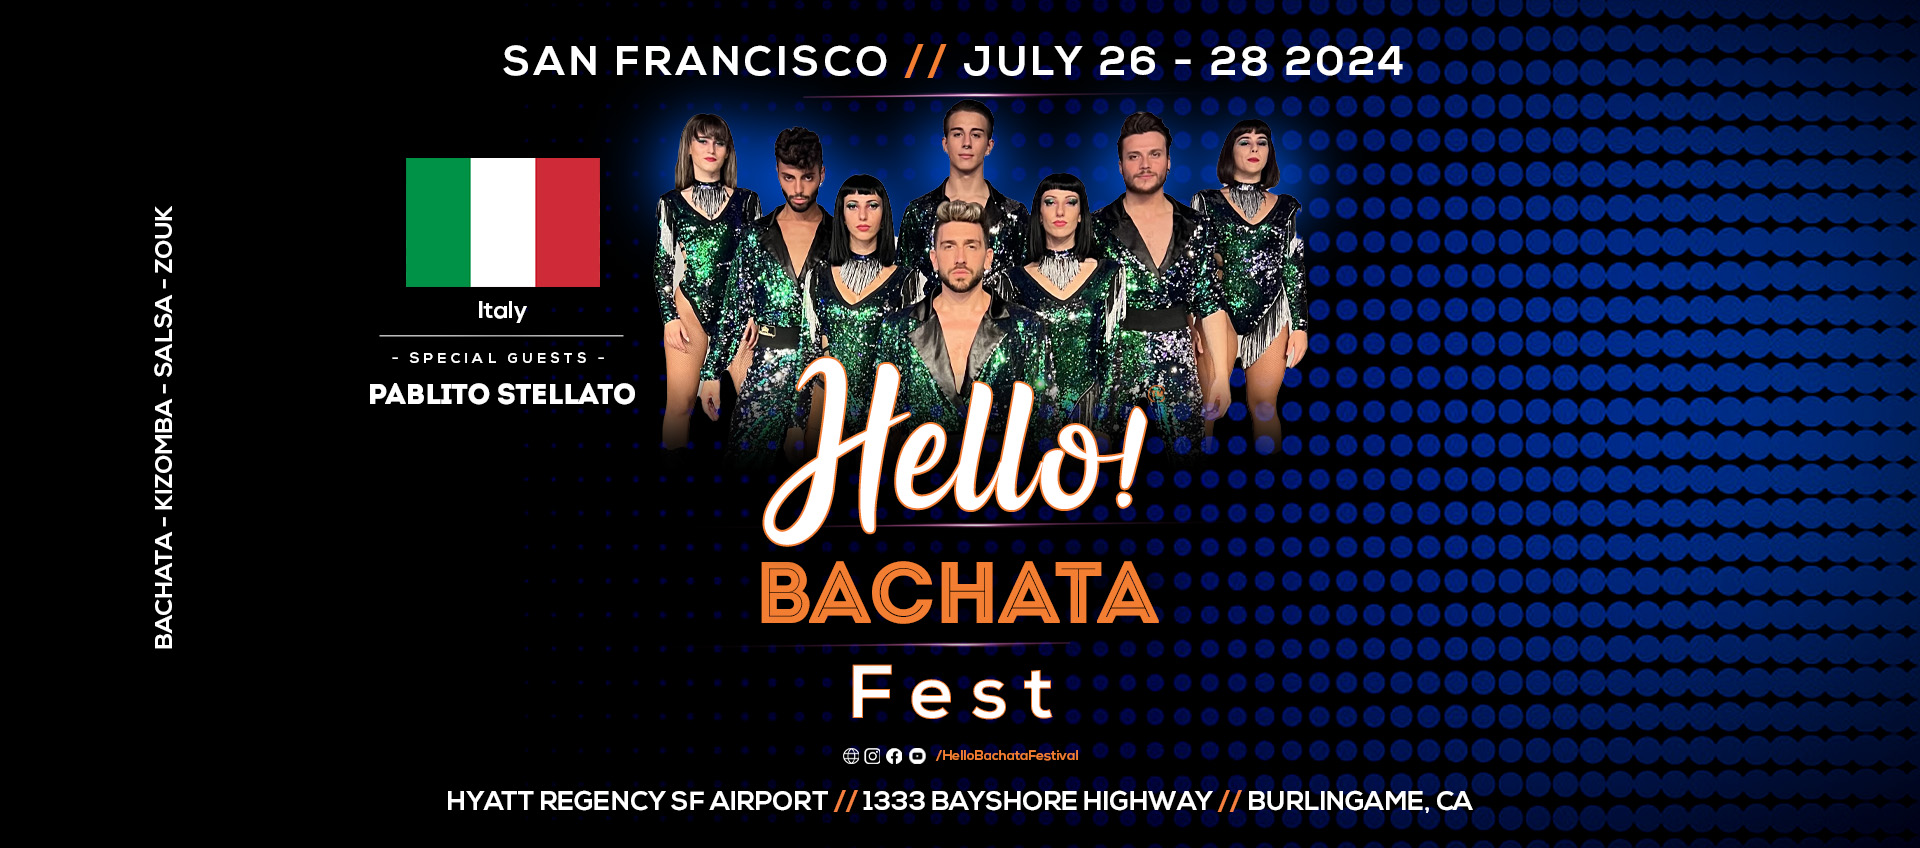 Hello! Bachata Fest - Pablito Stellato - Salsa - Italy